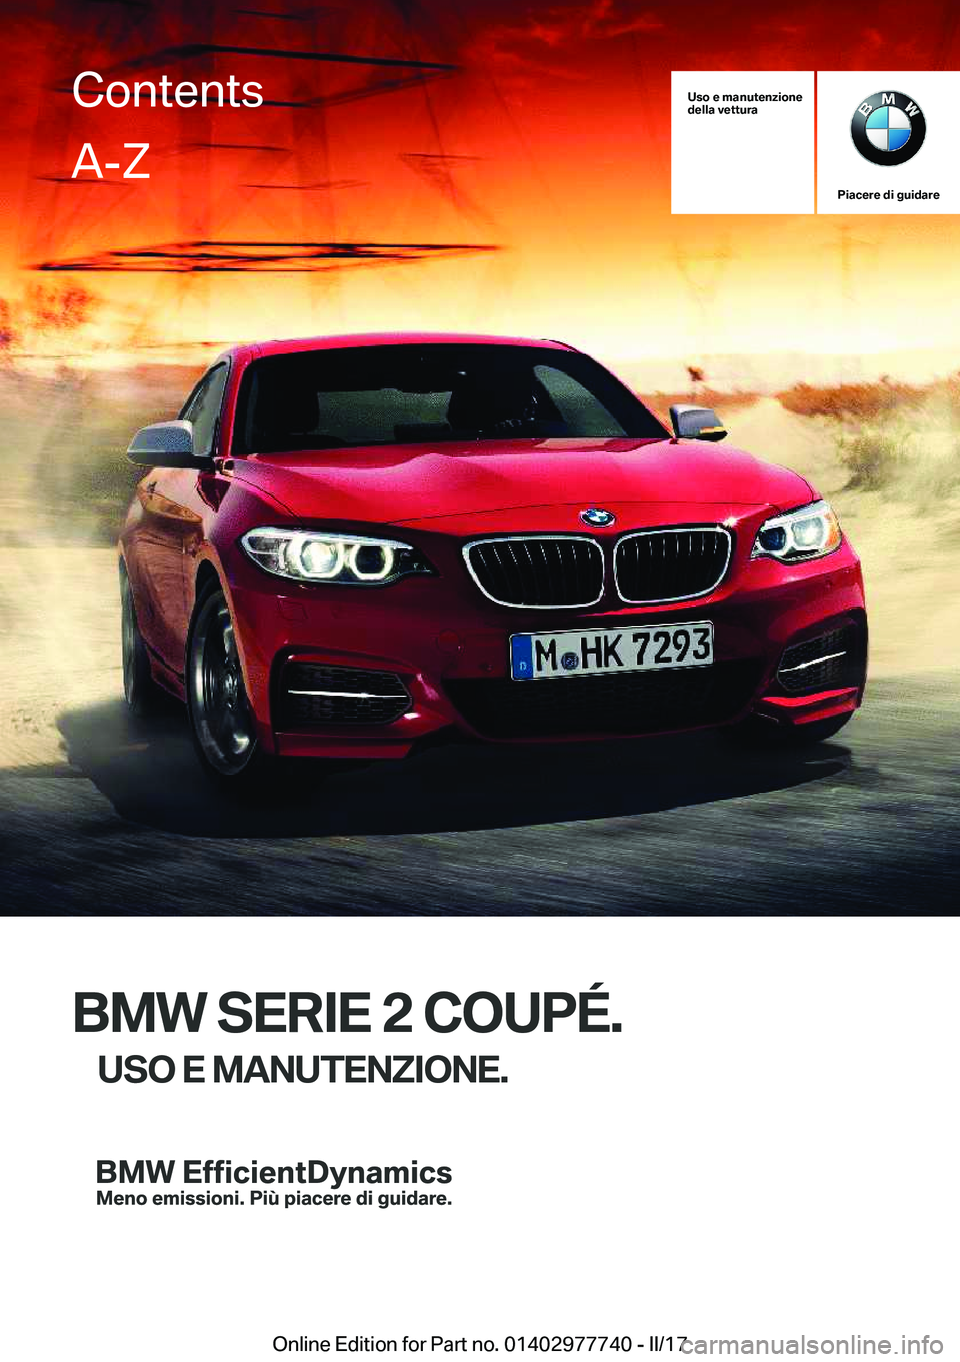 BMW 2 SERIES COUPE 2017  Libretti Di Uso E manutenzione (in Italian) �U�s�o��e��m�a�n�u�t�e�n�z�i�o�n�e
�d�e�l�l�a��v�e�t�t�u�r�a
�P�i�a�c�e�r�e��d�i��g�u�i�d�a�r�e
�B�M�W��S�E�R�I�E��2��C�O�U�P�